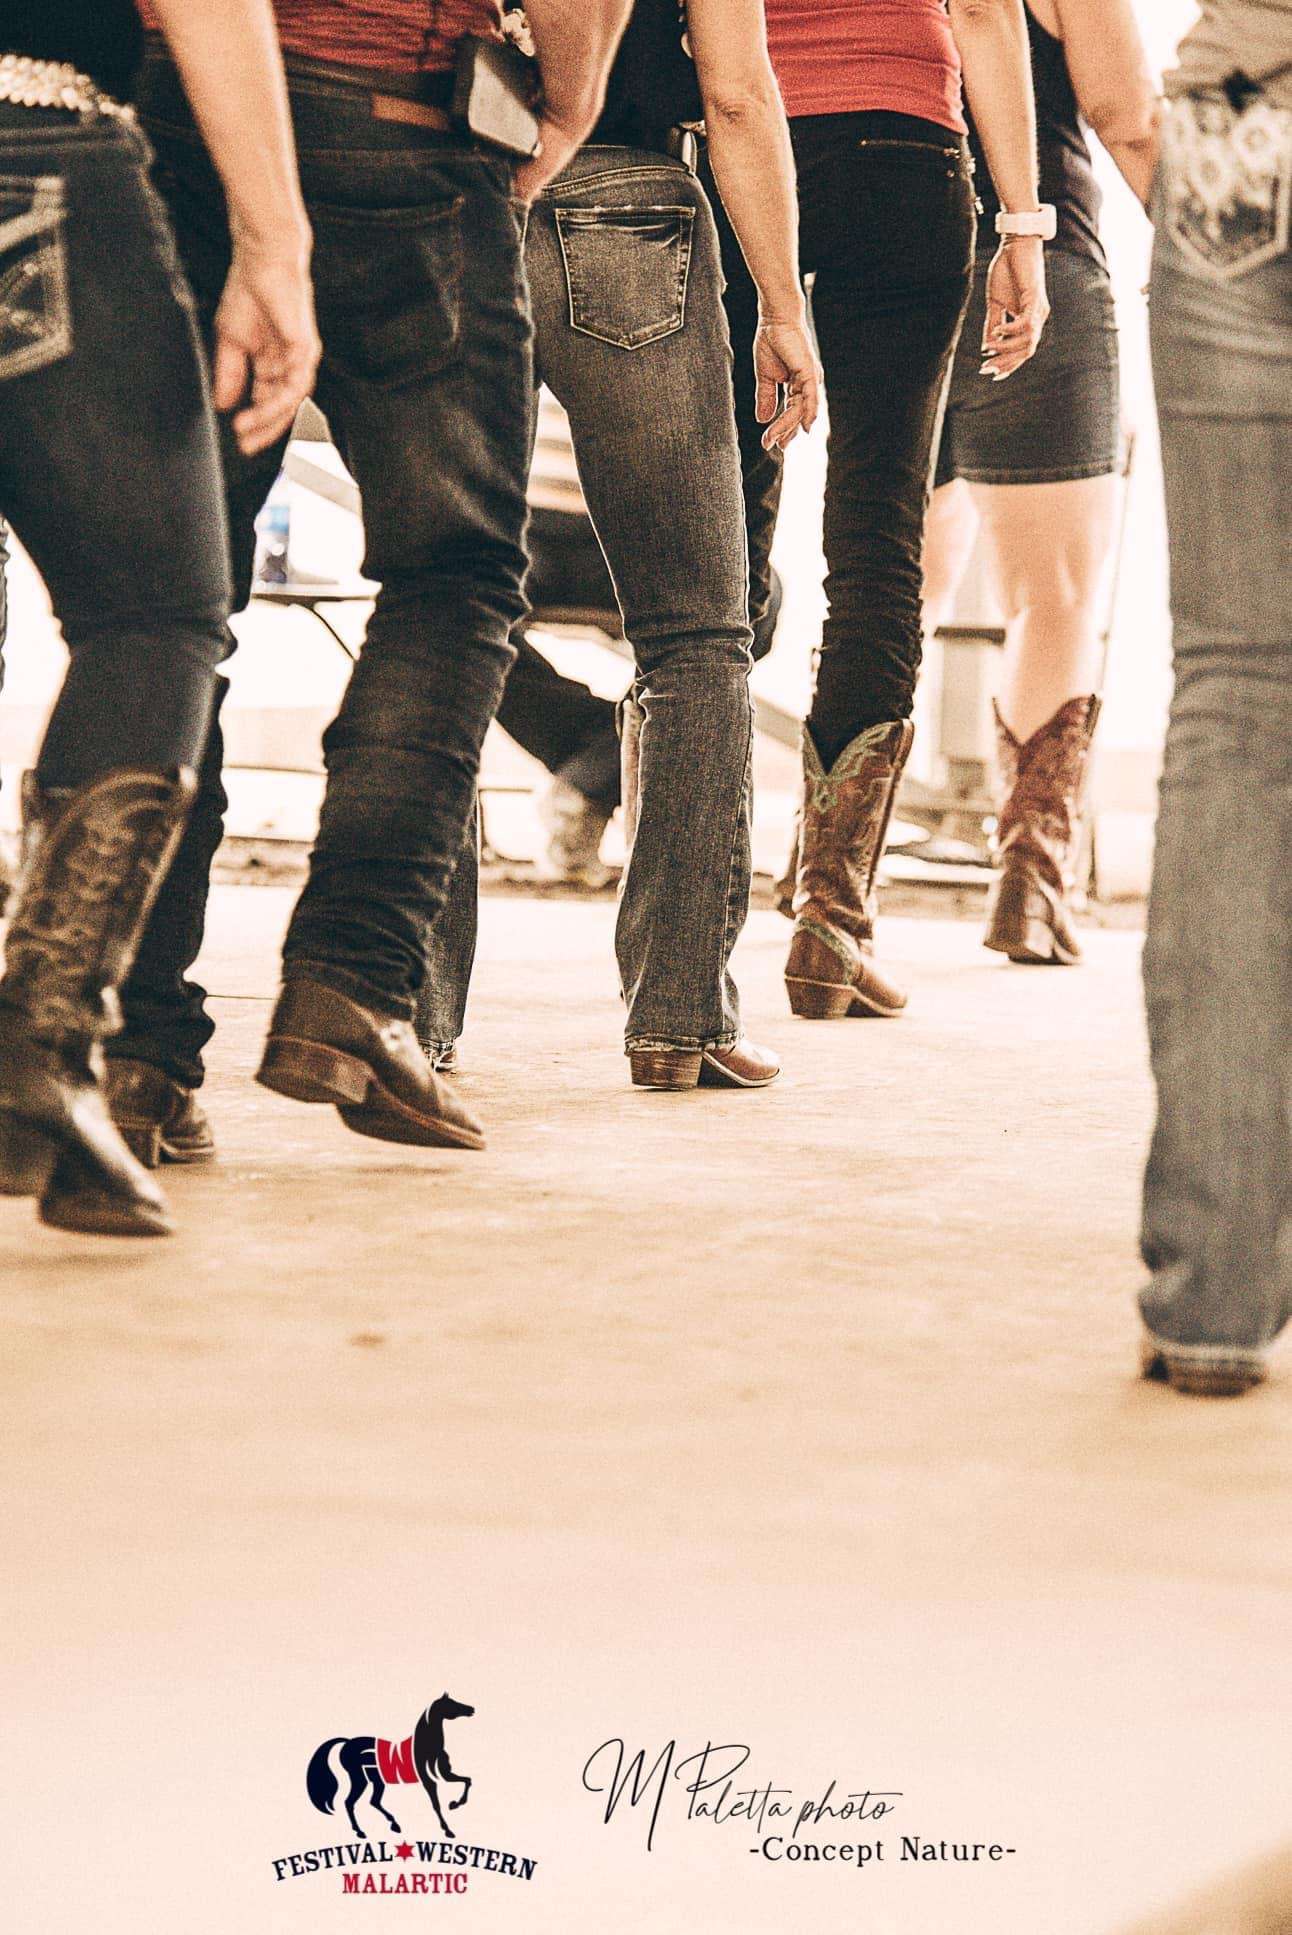 La photo présente le bas de corps de six danseurs. Ils portent tous des bottes de cowboy et font une danse en ligne. 